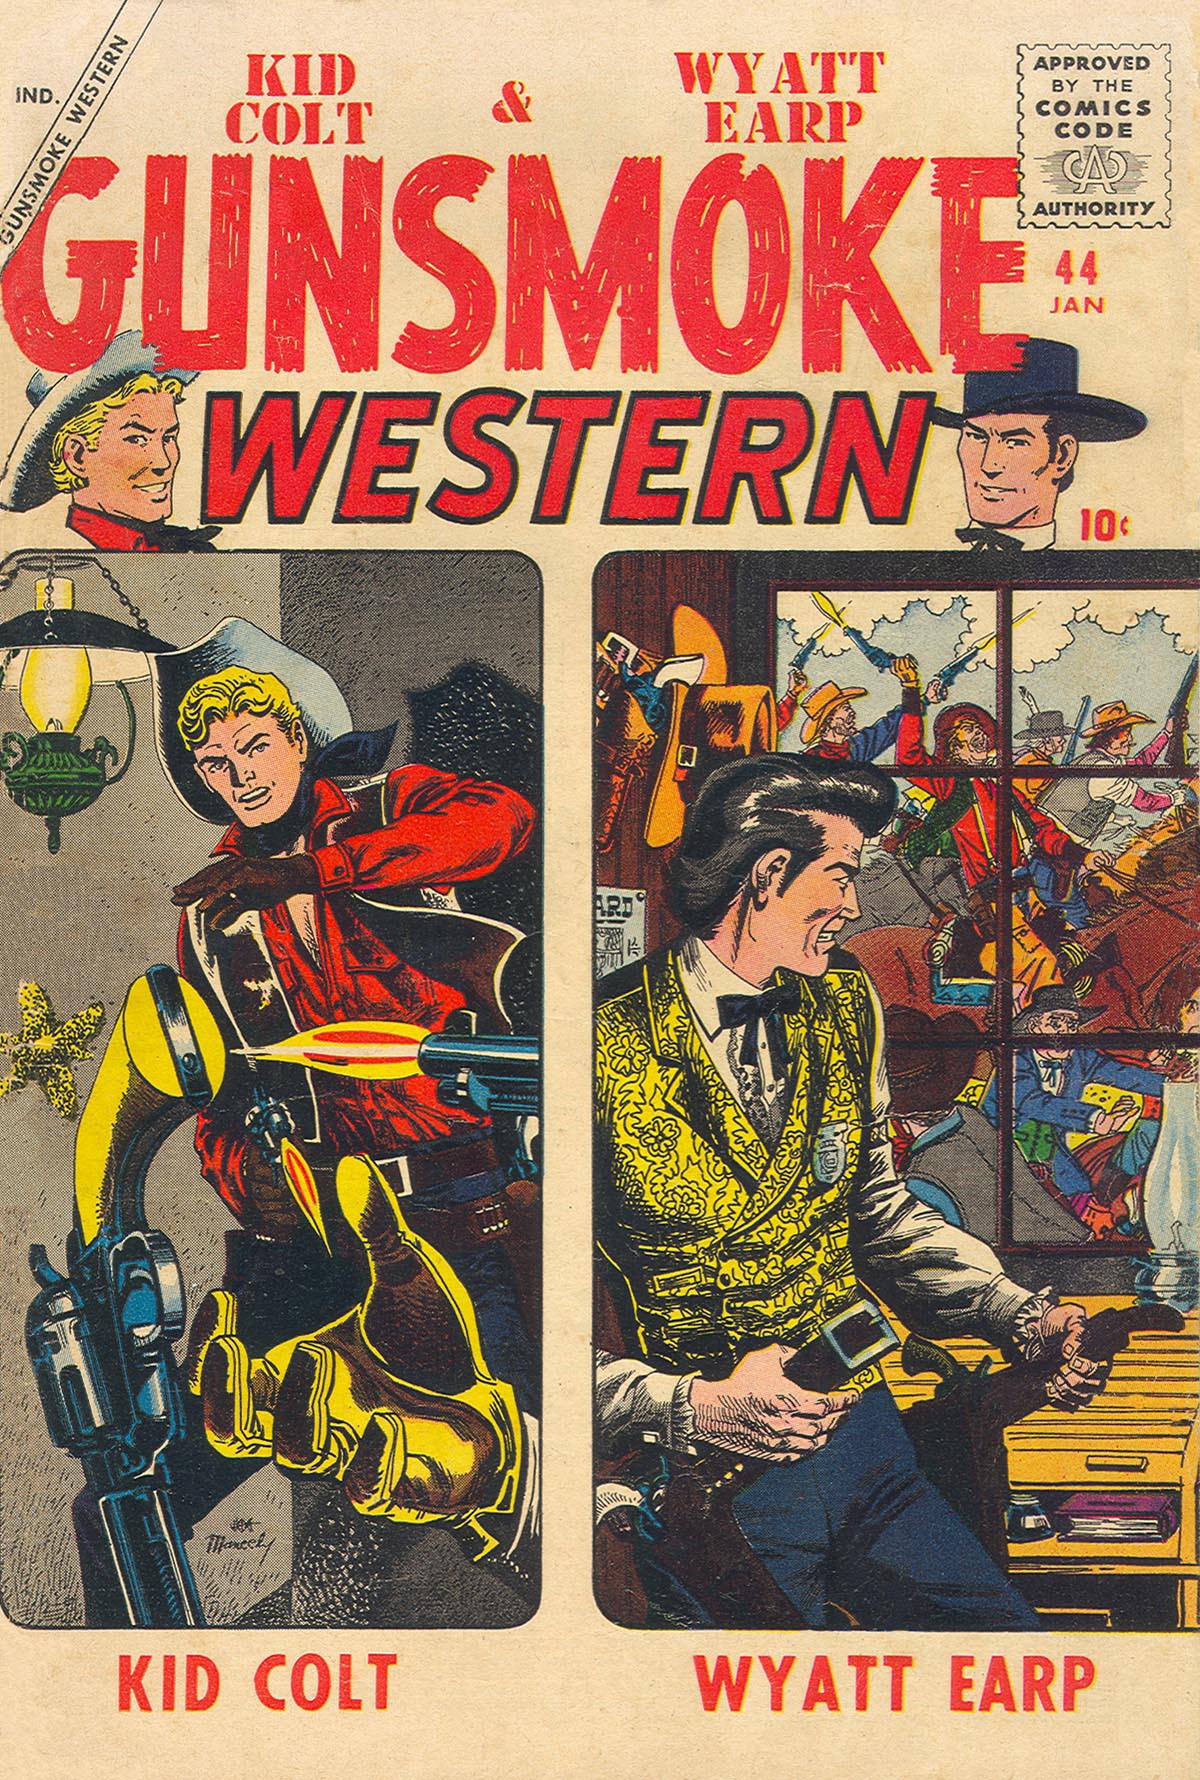 Read online Gunsmoke Western comic -  Issue #44 - 1